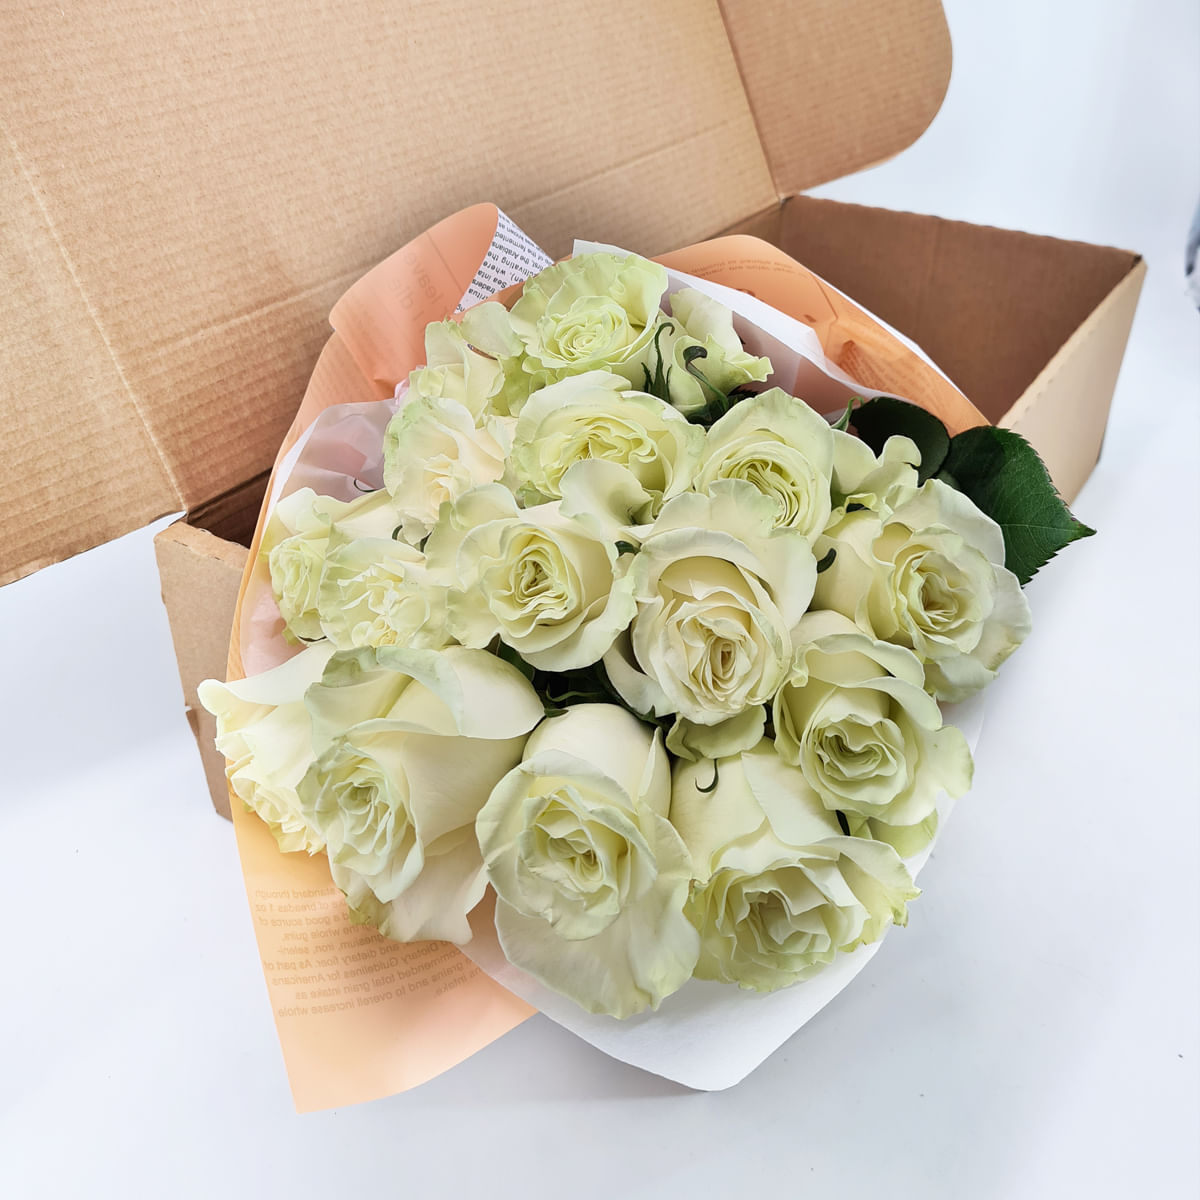 Buchet de 15 trandafiri albi in cutie Floria